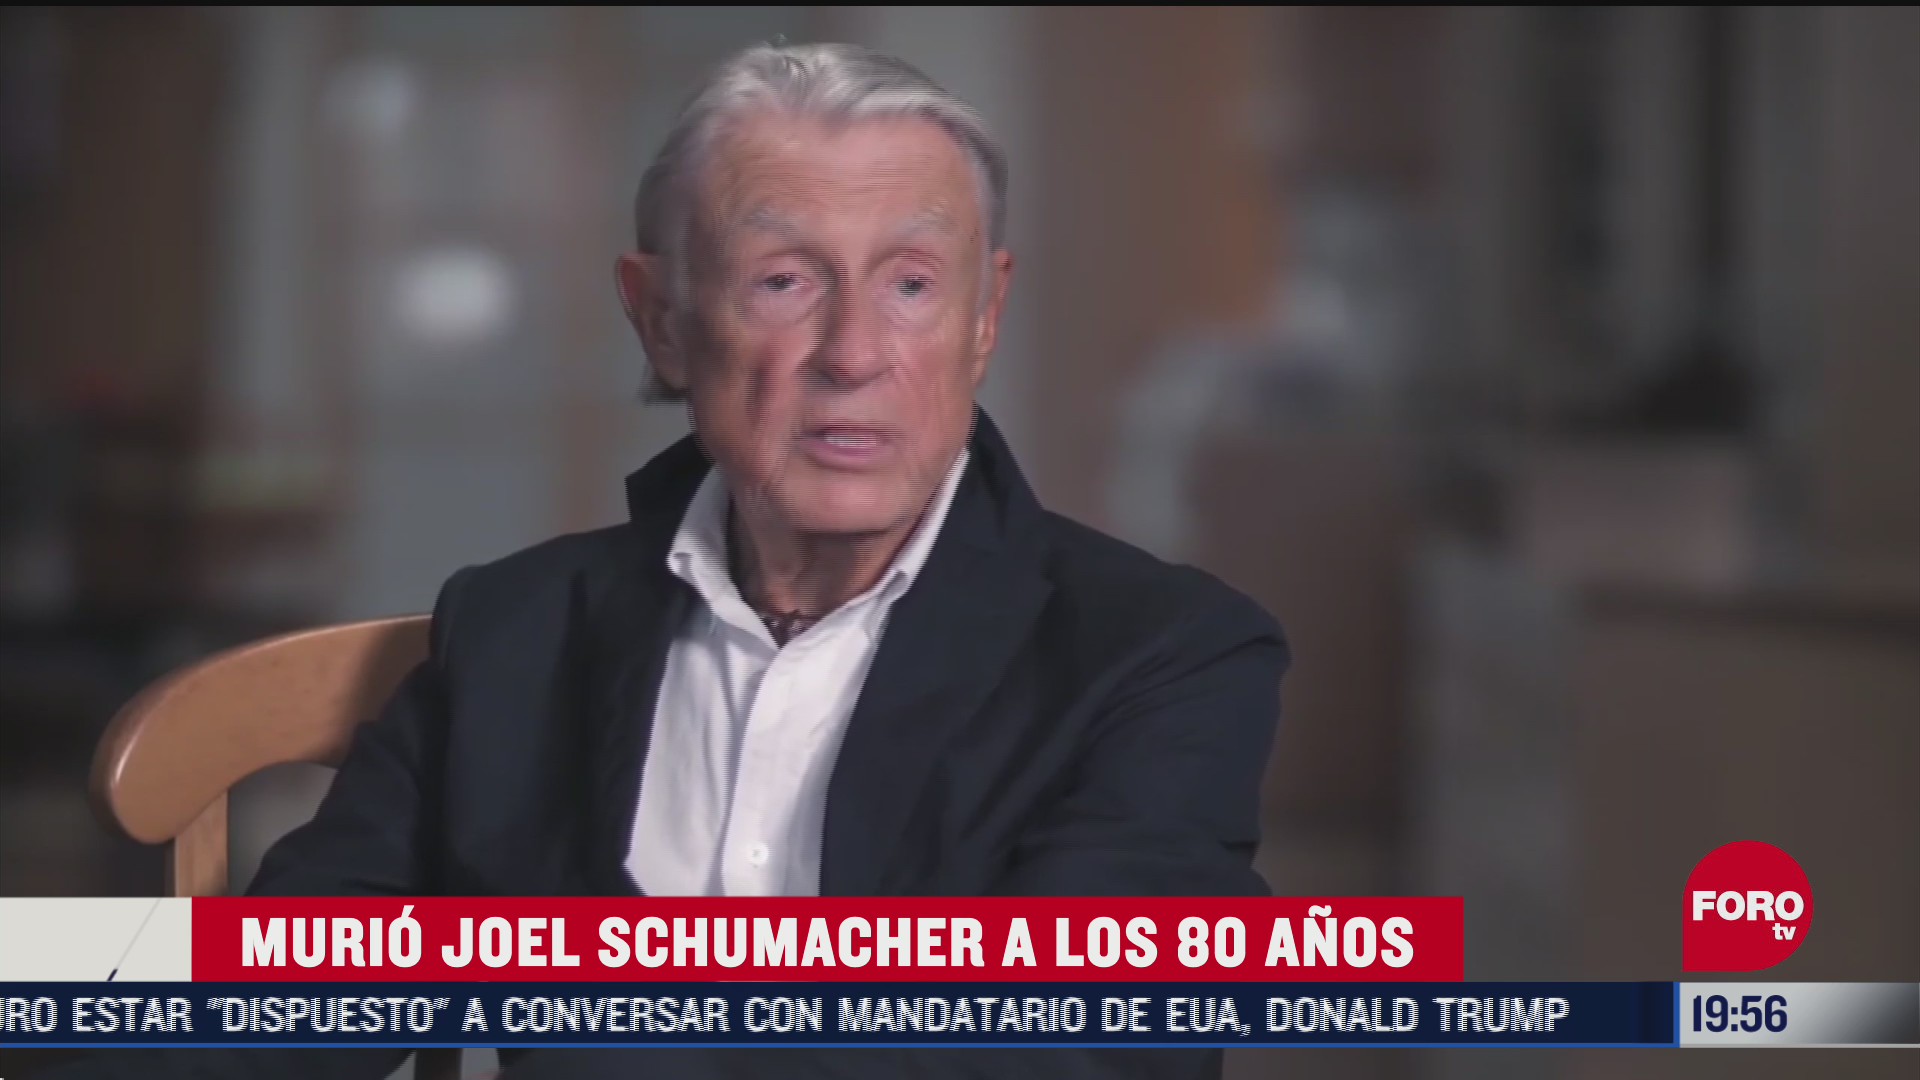 joel schumacher muere a los 80 anos